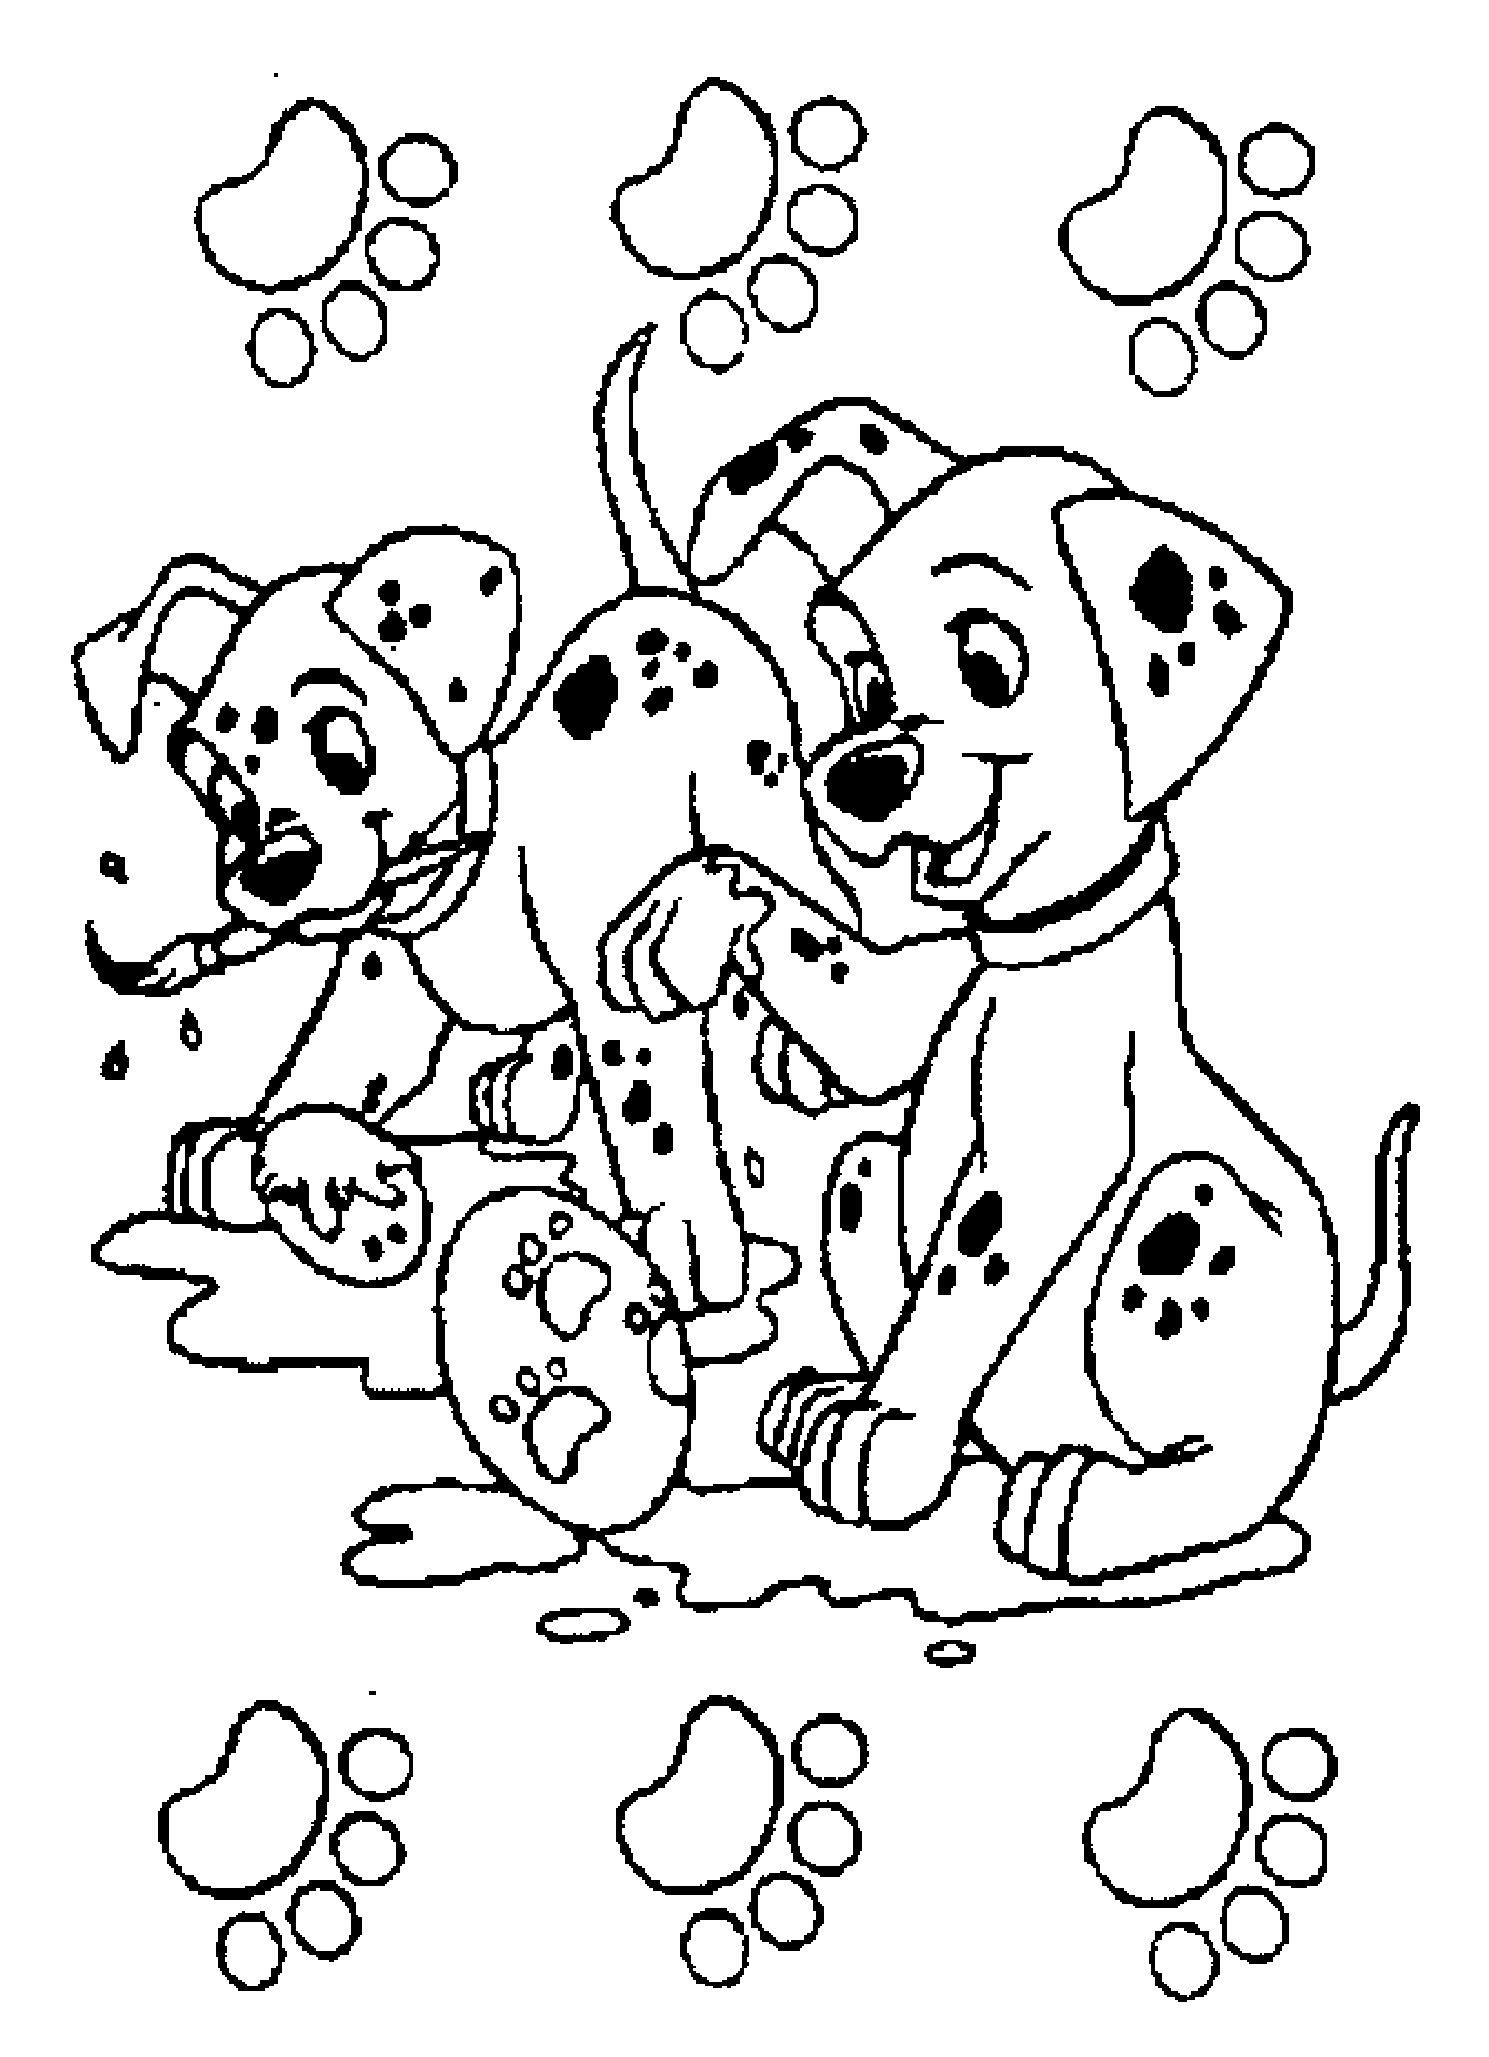 Disney's Puppies!